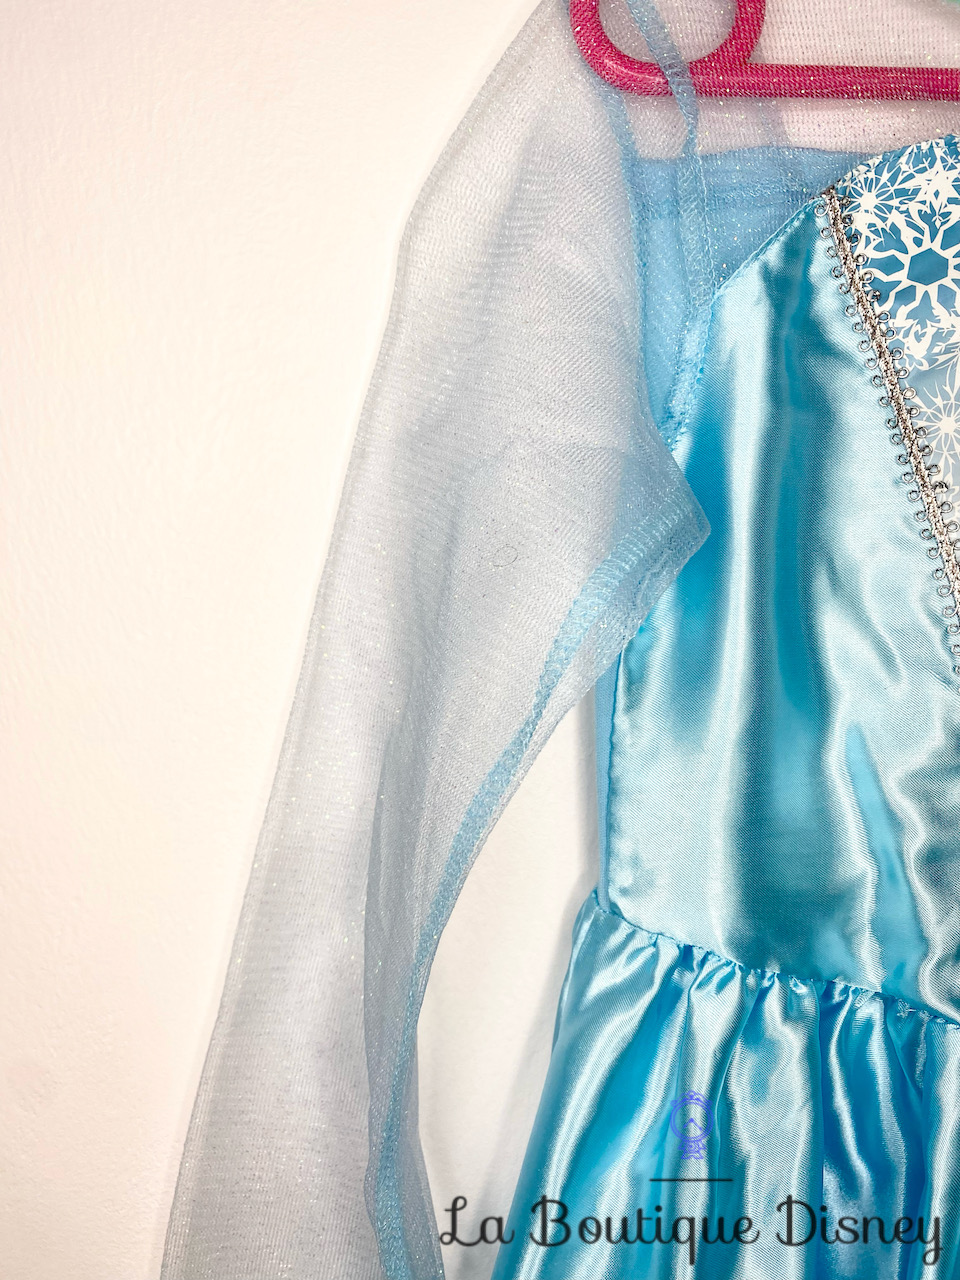 Rubie's 889542M deguisement robe Frozen, La Reine des Neiges Elsa, Taille 5/6  ans : : Jeux et Jouets